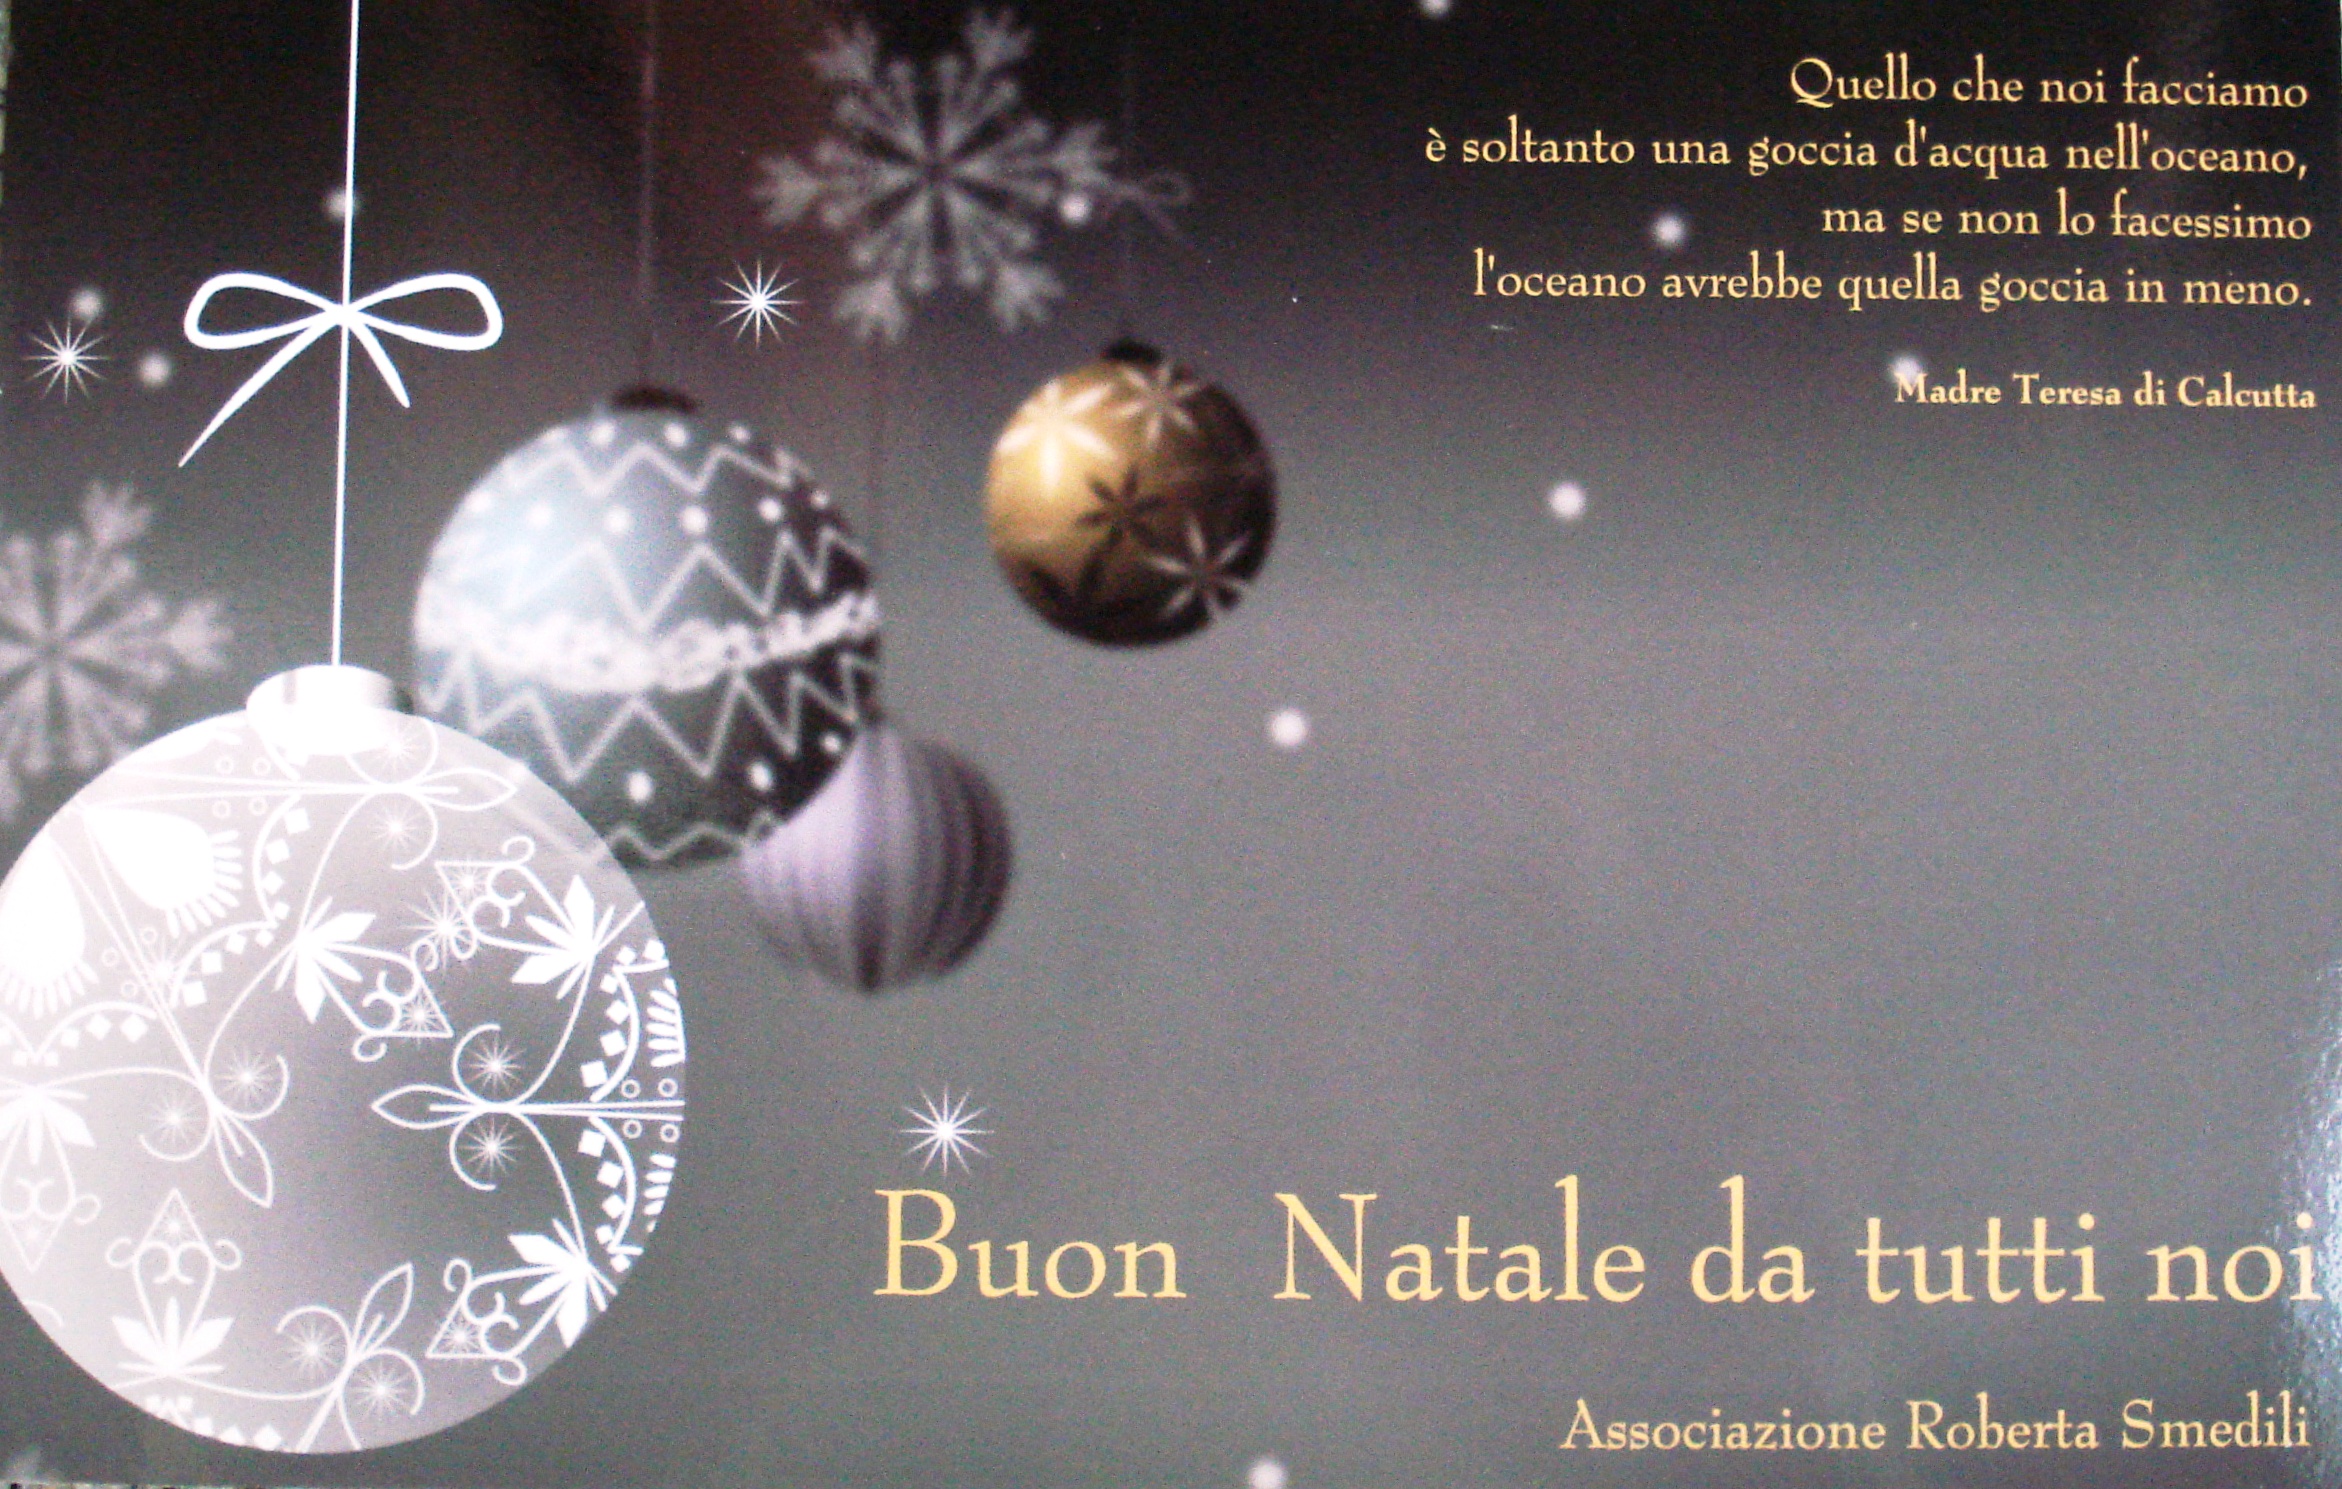 Foto Di Buon Natale Tutti.Buon Natale Da Tutti Noi Associazione Roberta Smedili Artwork Celeste Network